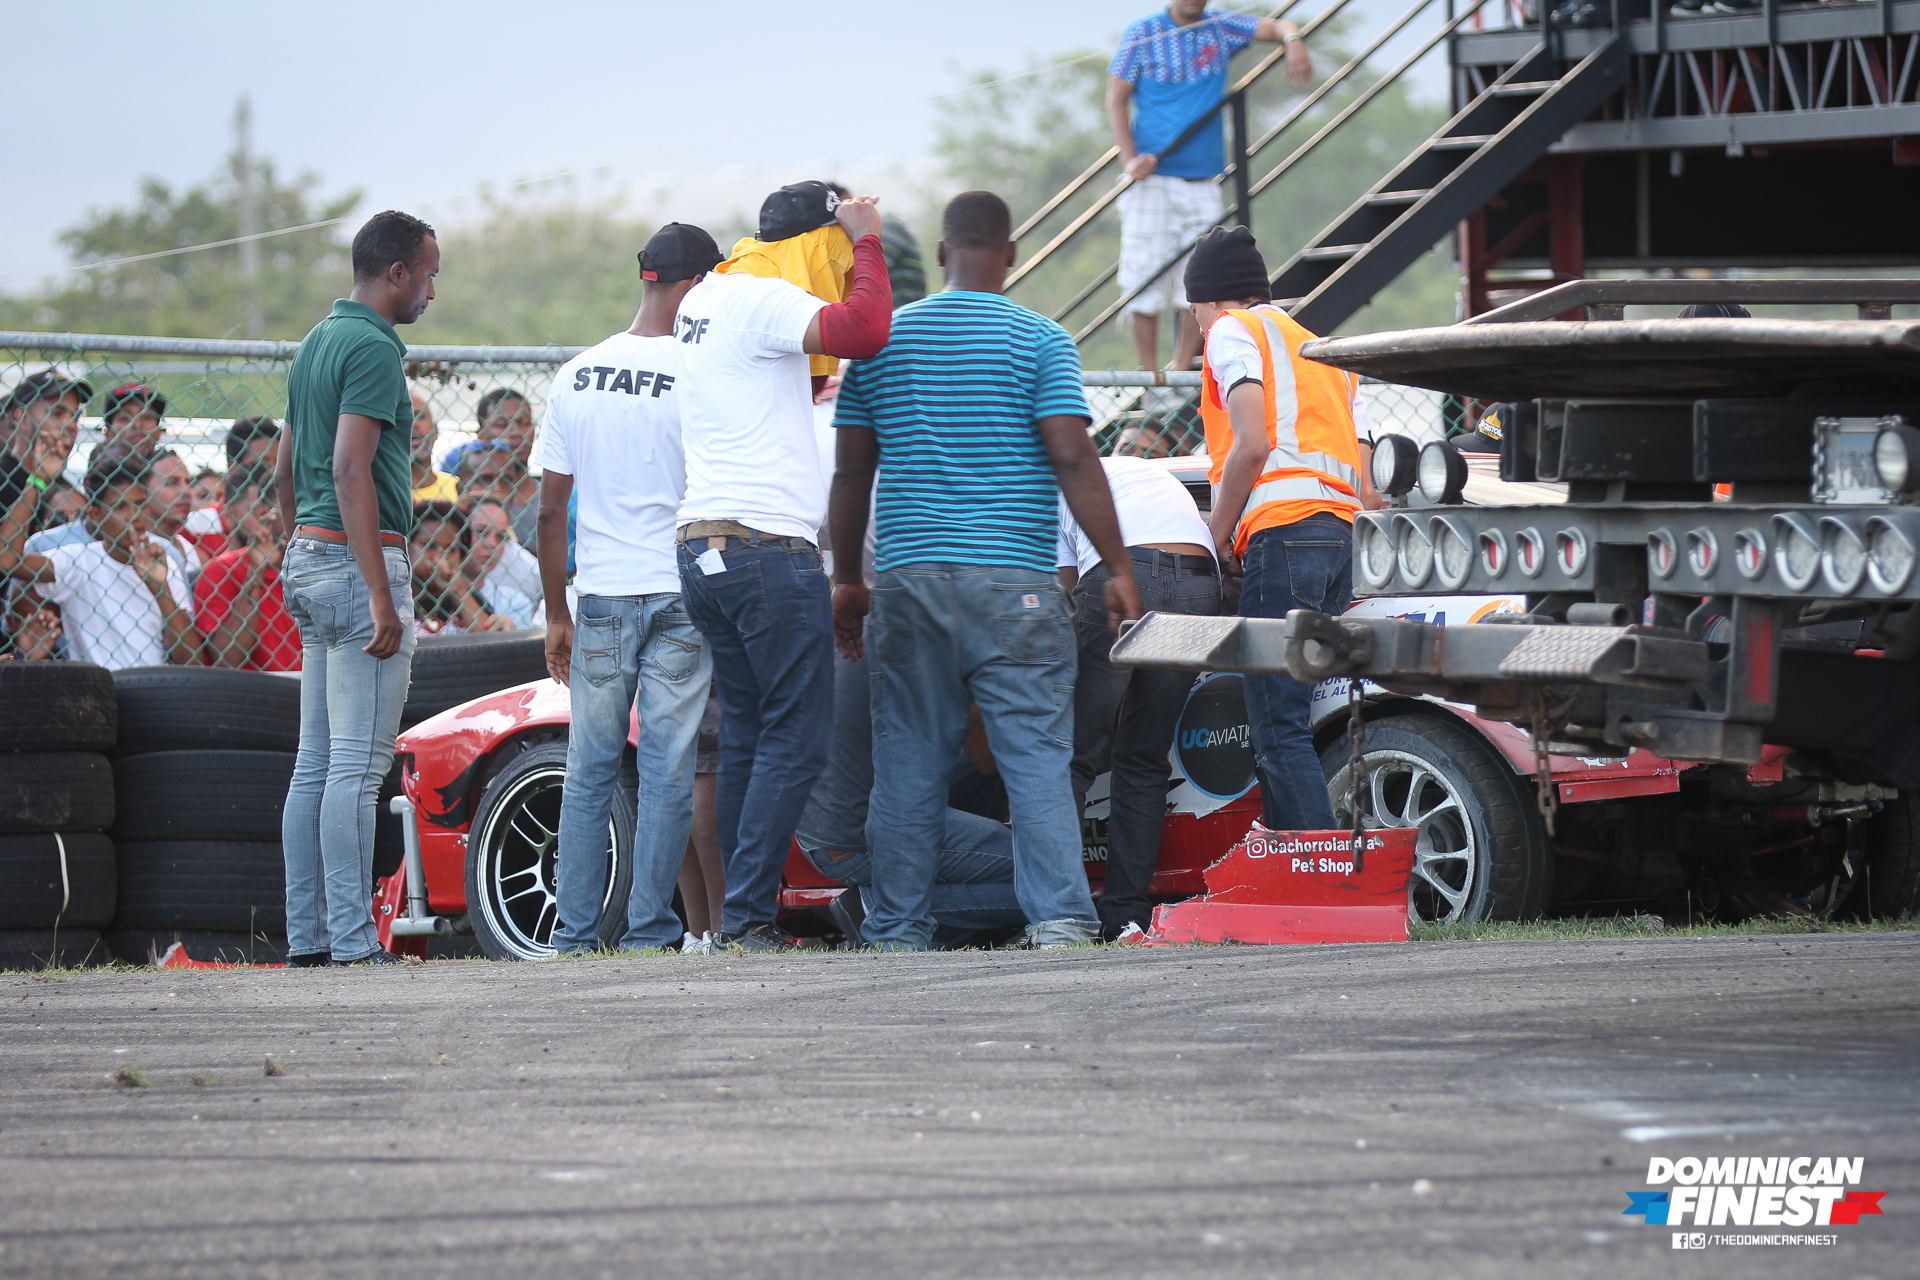 ROUND 1 | Serie Dominicana de Drift by Achilles Radial - Autódromo Sunix.